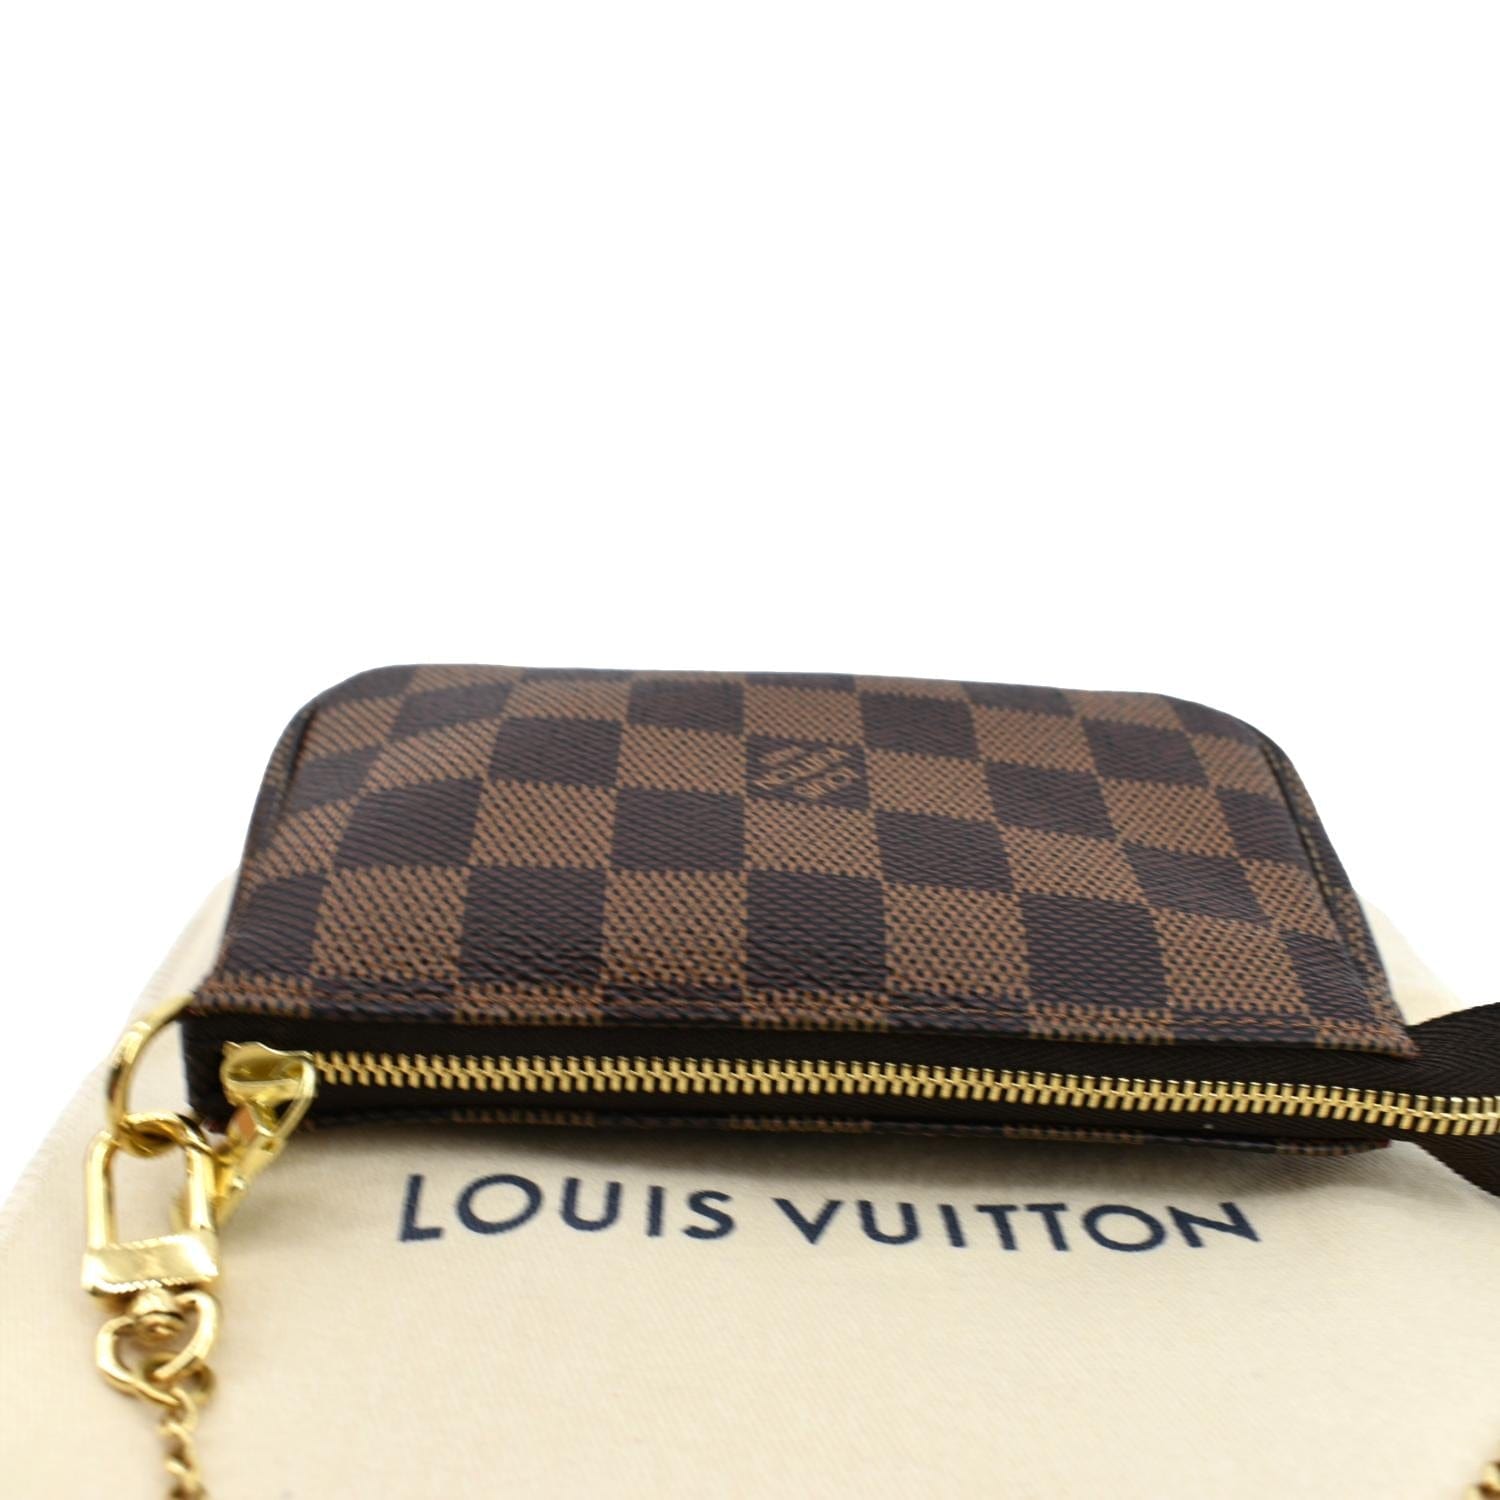 Sold at Auction: Louis Vuitton, LOUIS VUITTON Pochette MINI PLEATY.